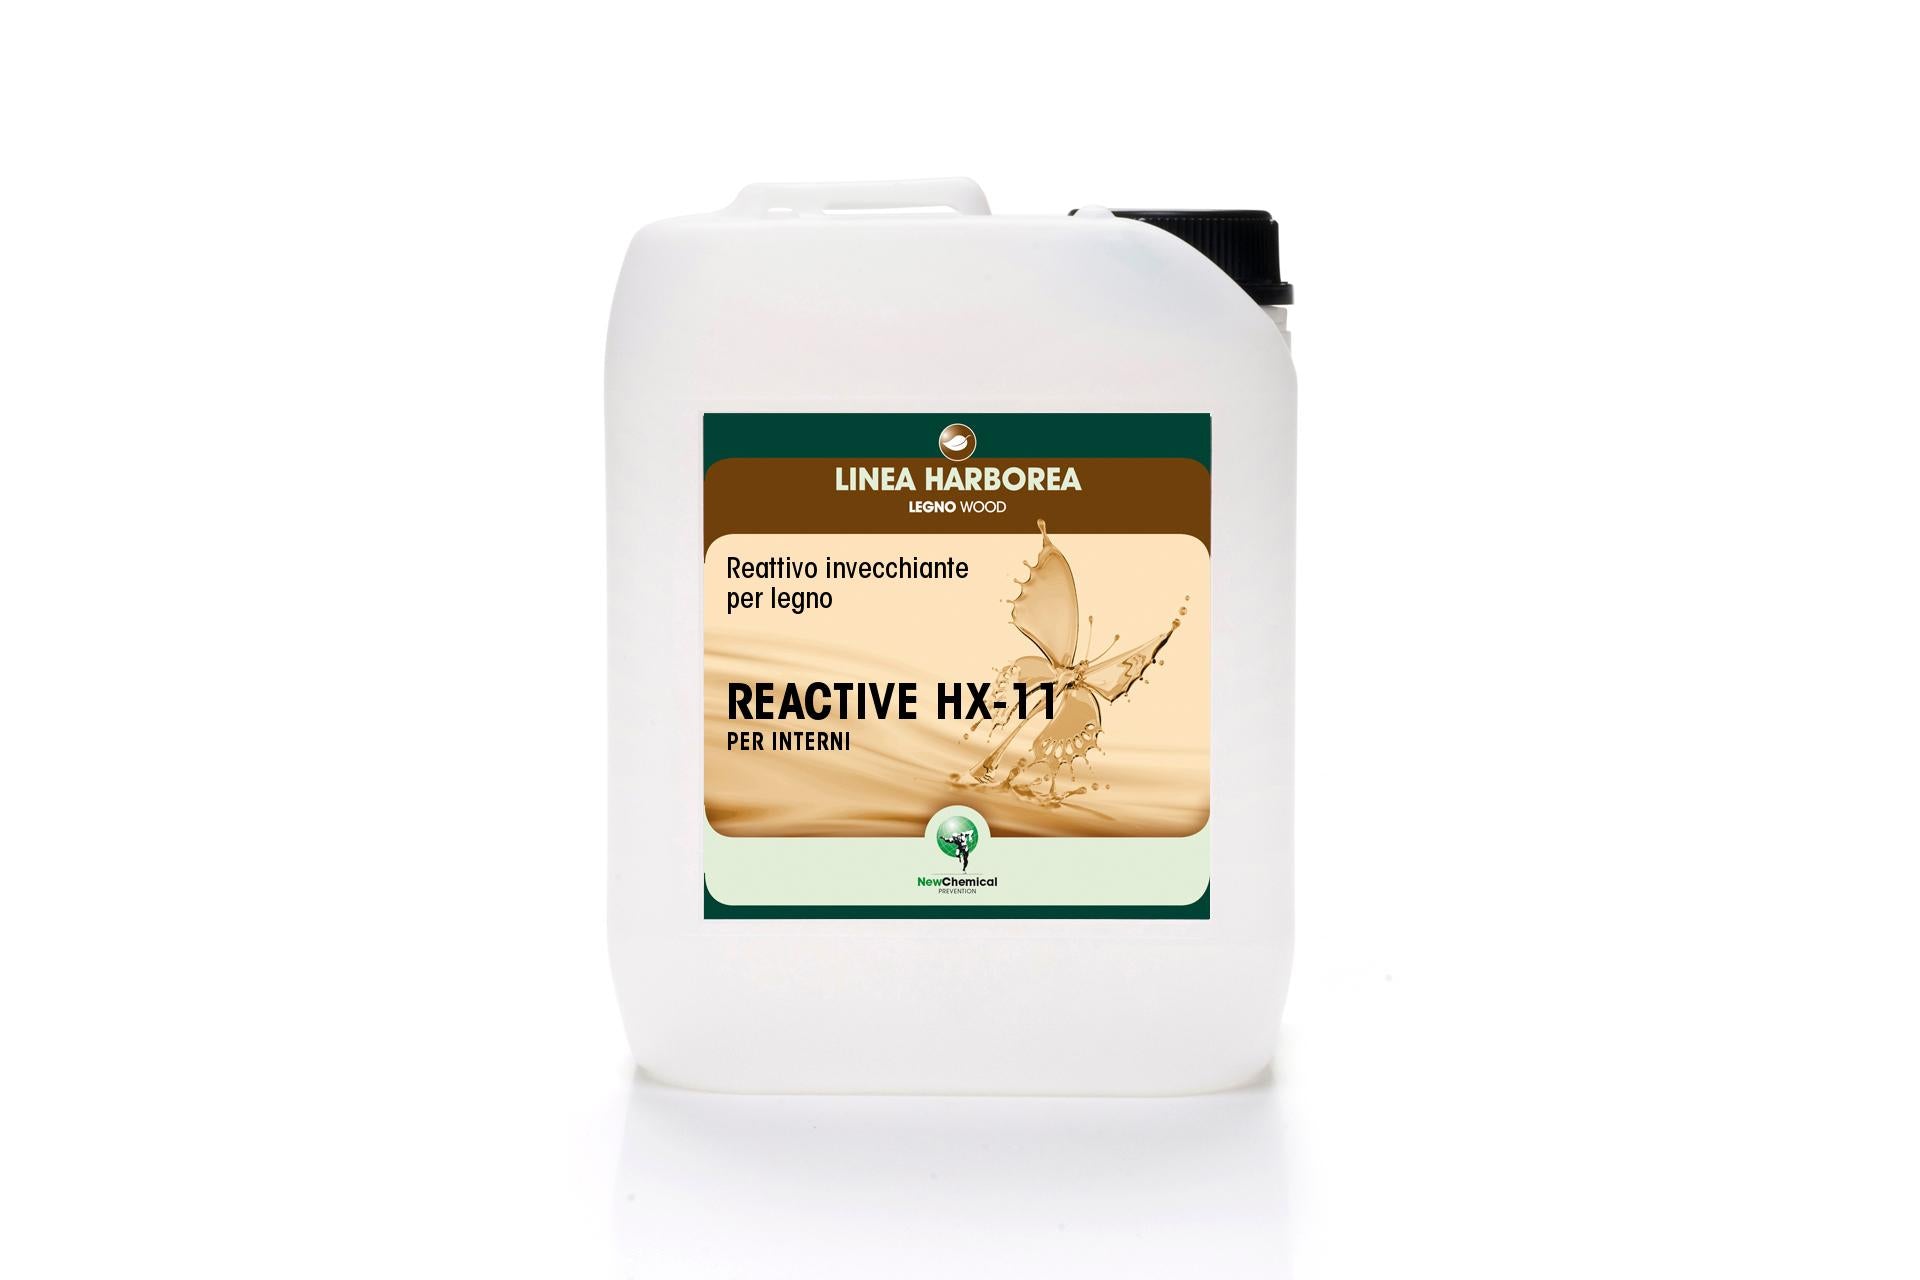 Reactive HX-11